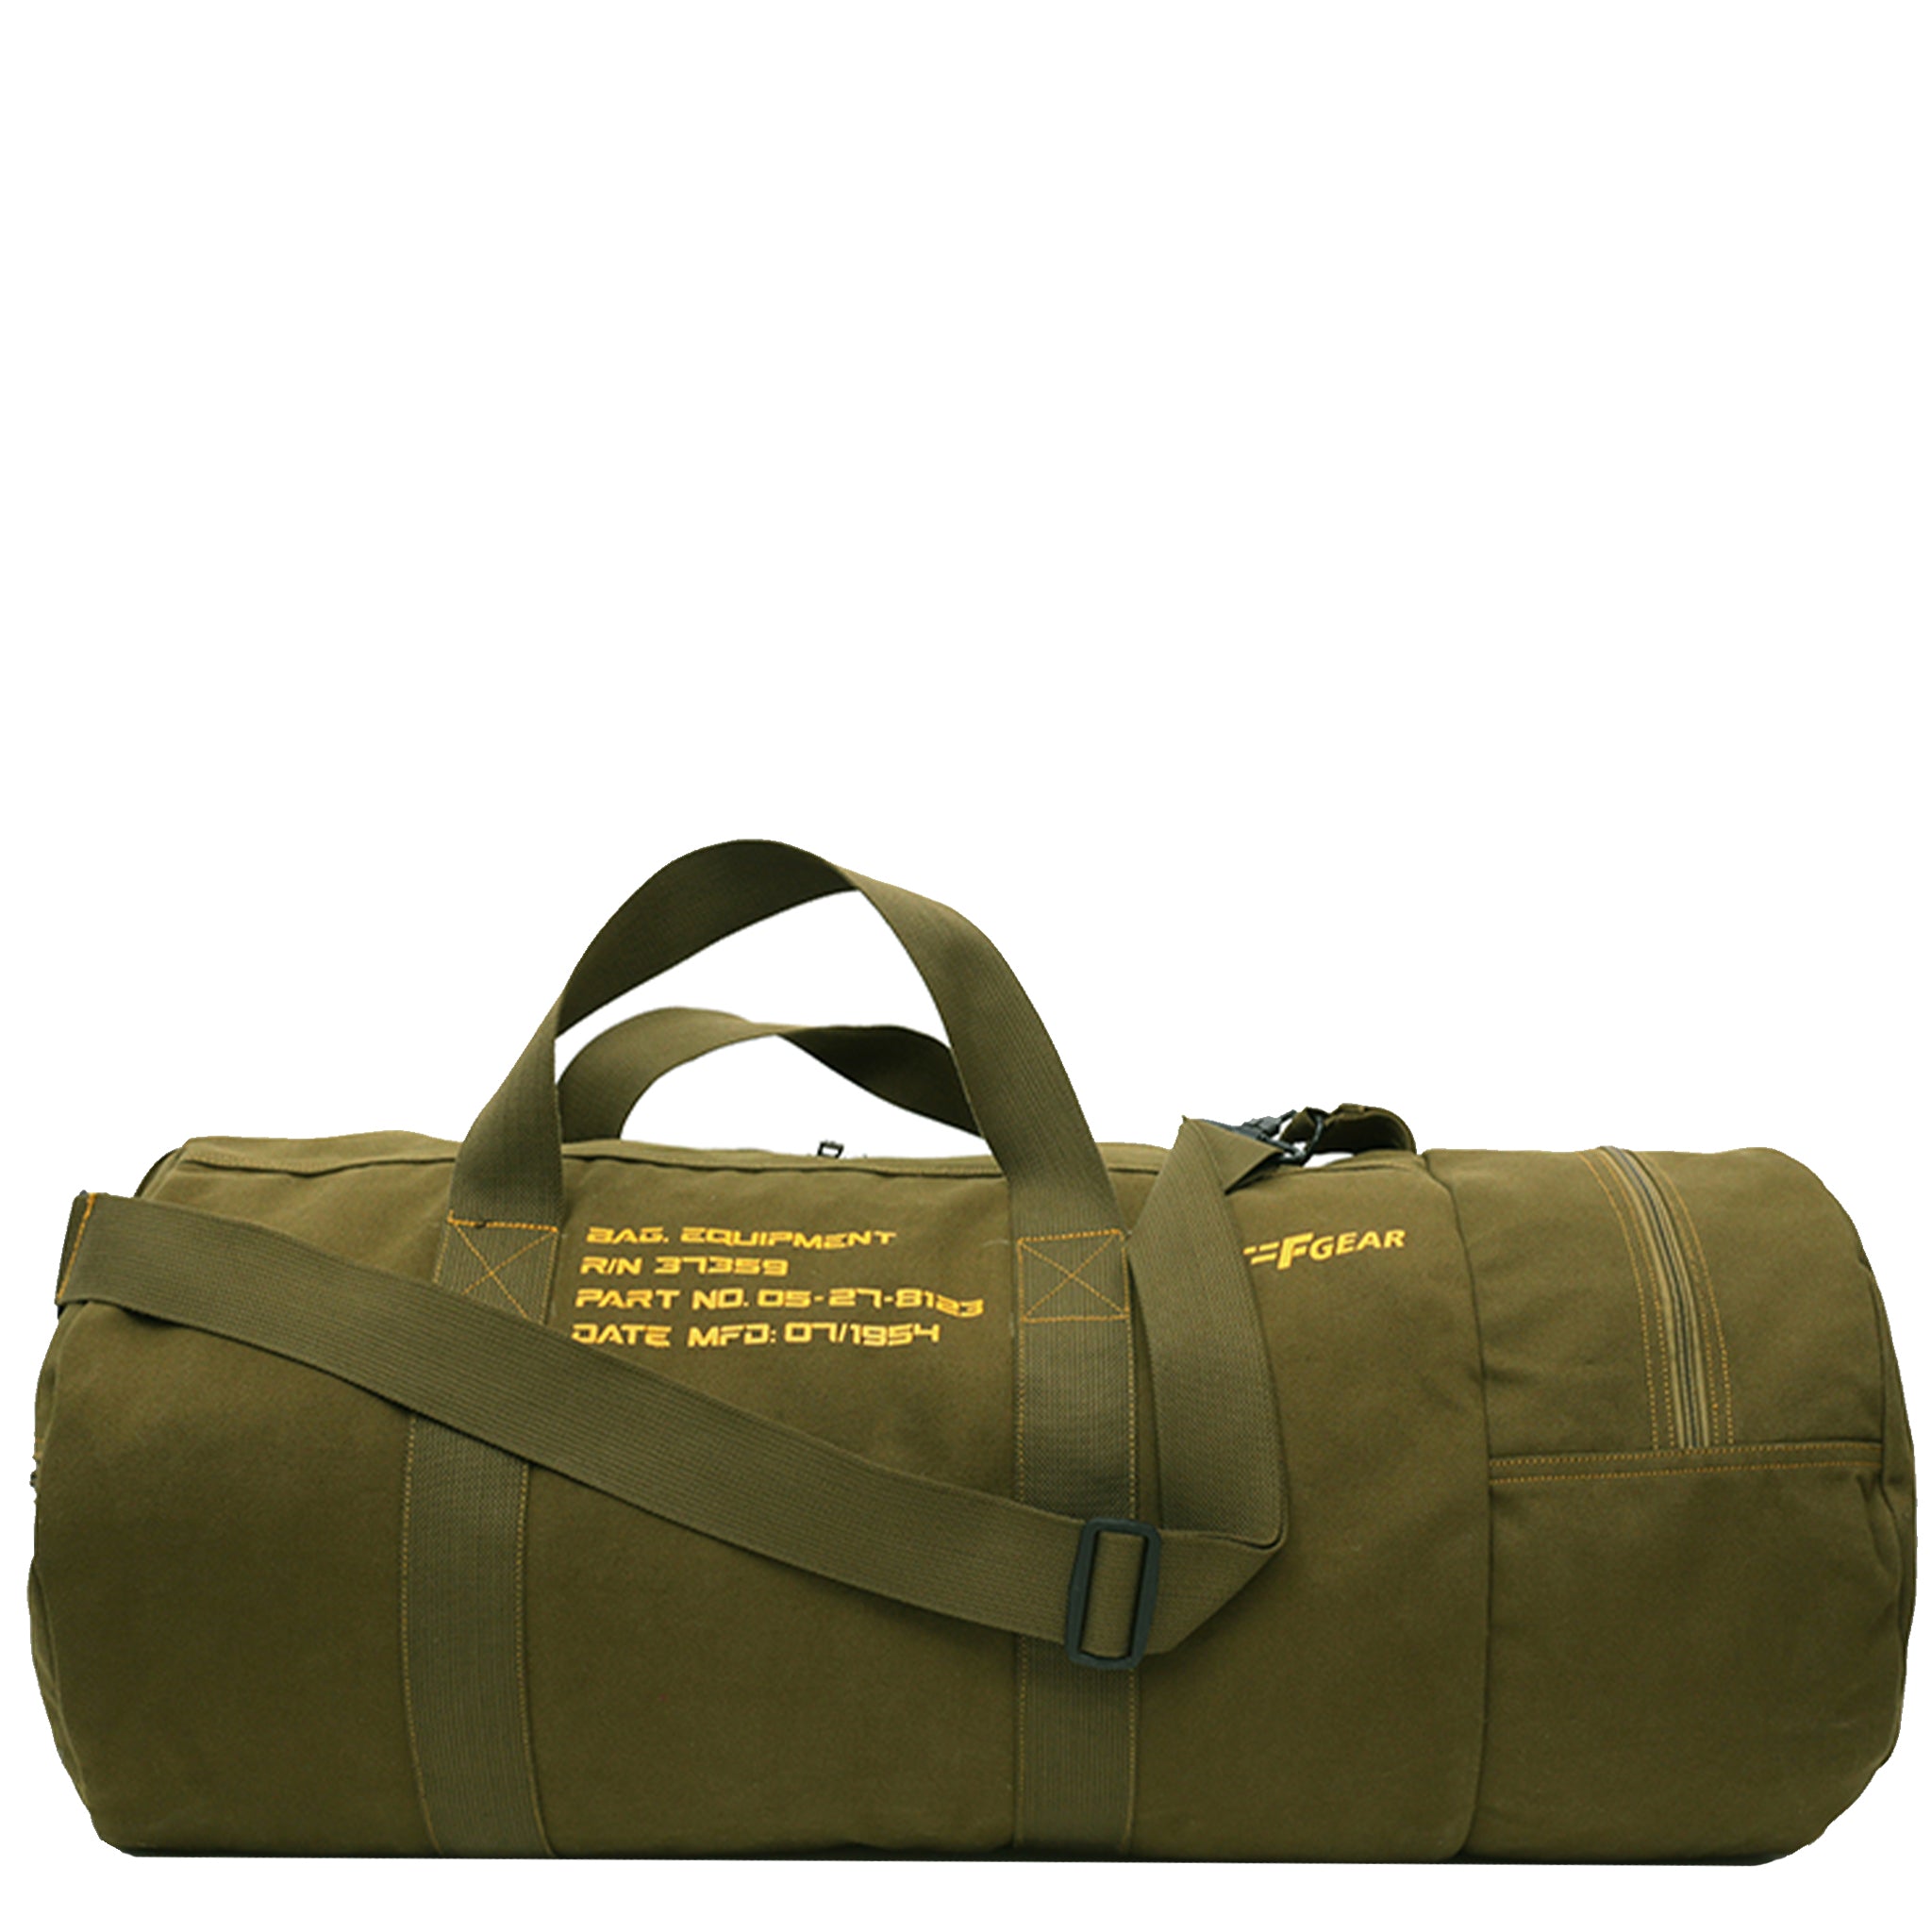 Mickey (Duffle bag/Gym Bag) – Oblique